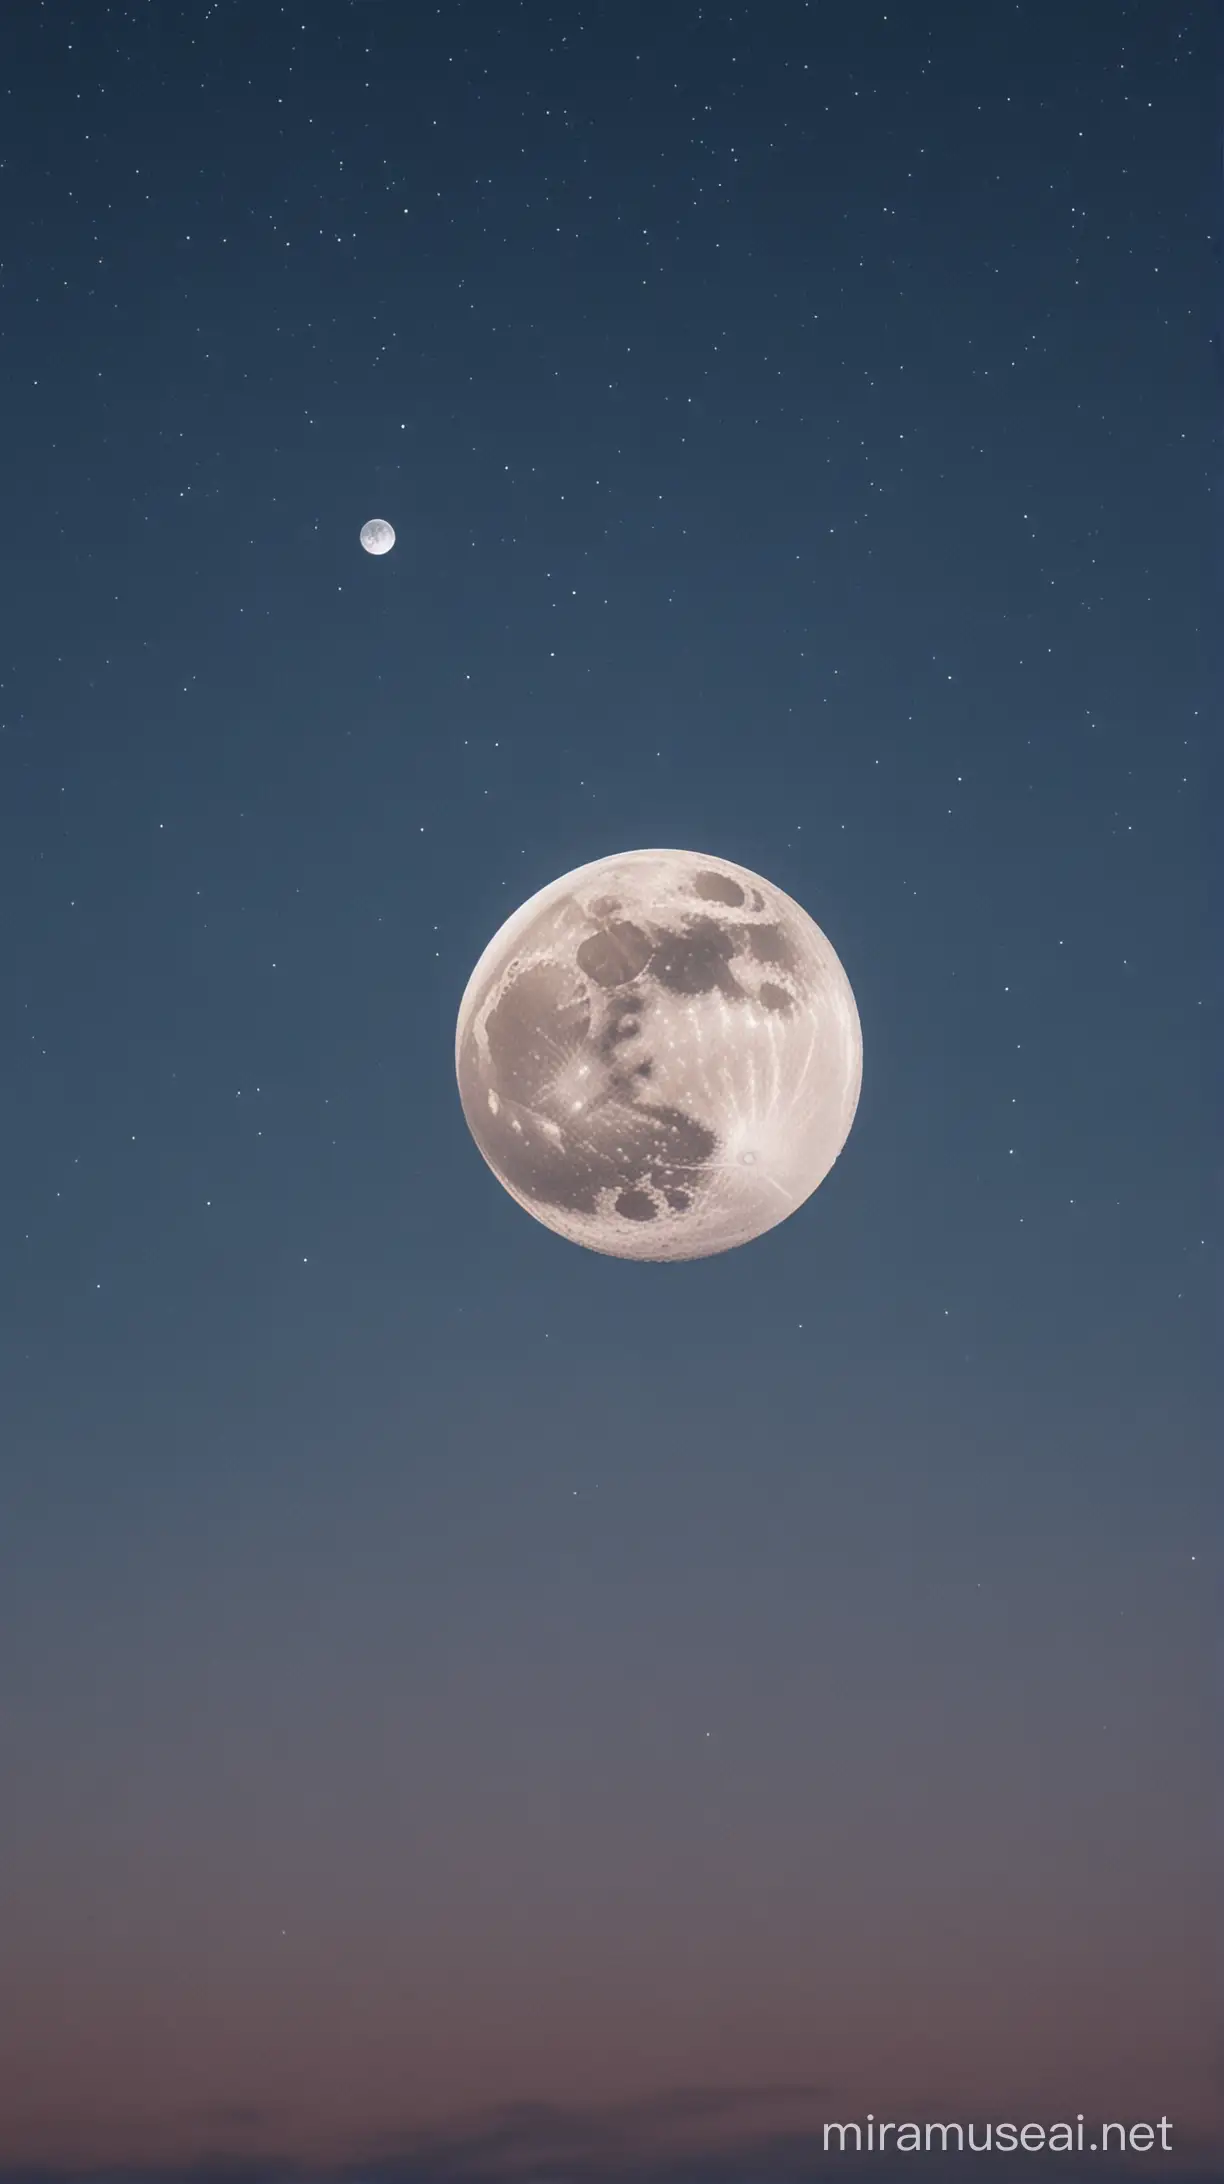 Stunning Night View Real Moon Illuminates the Sky